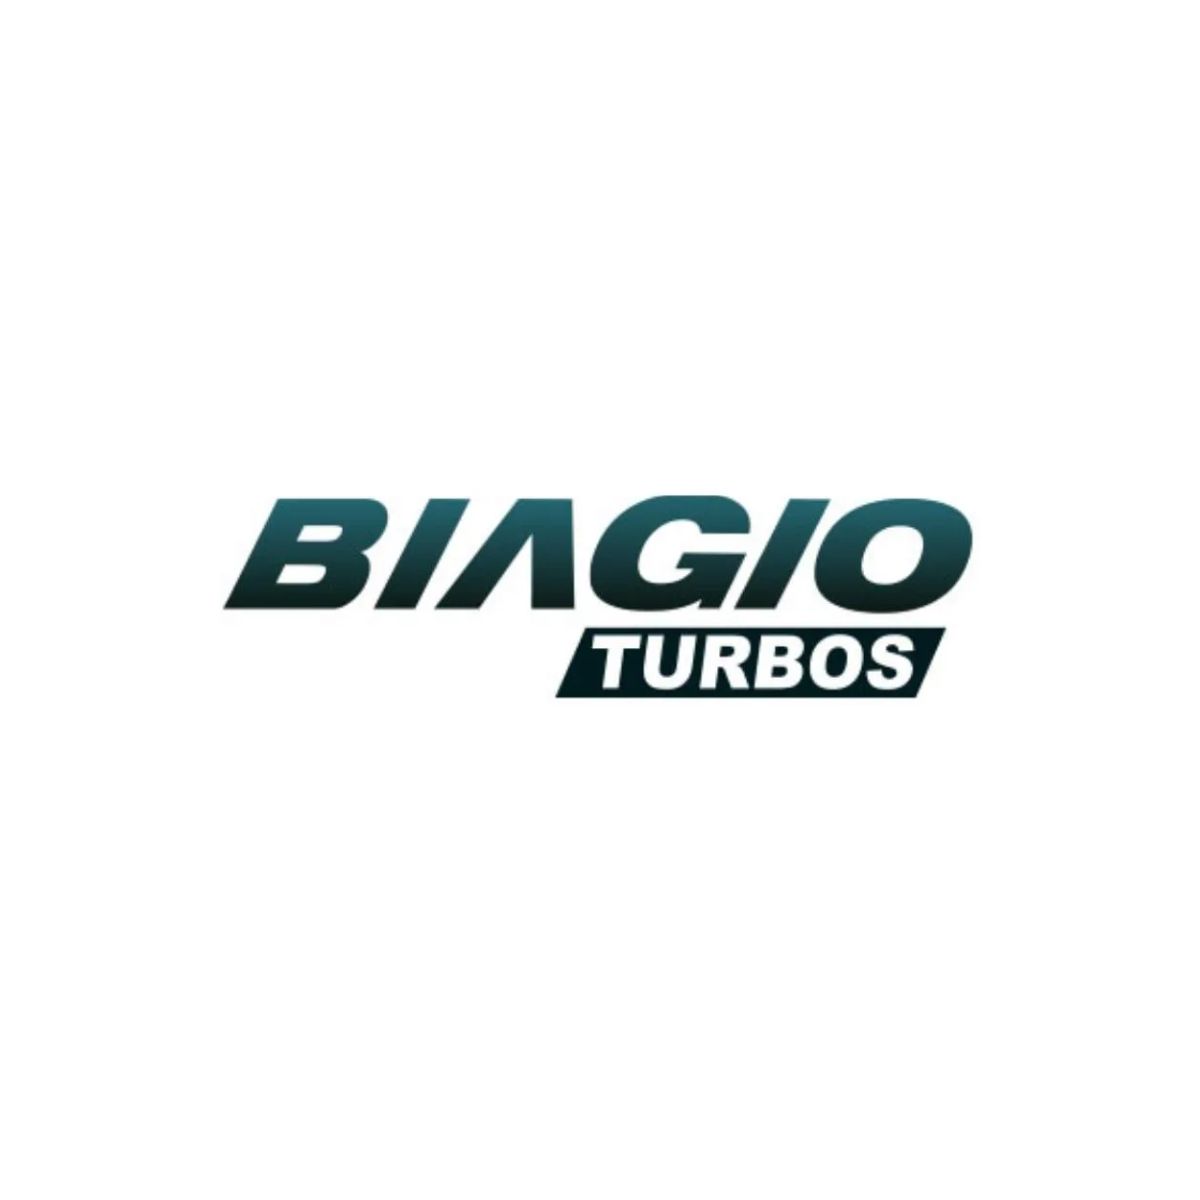 Turbo/Turbina Biagio Ford F250/350/4000 Cummins 4B